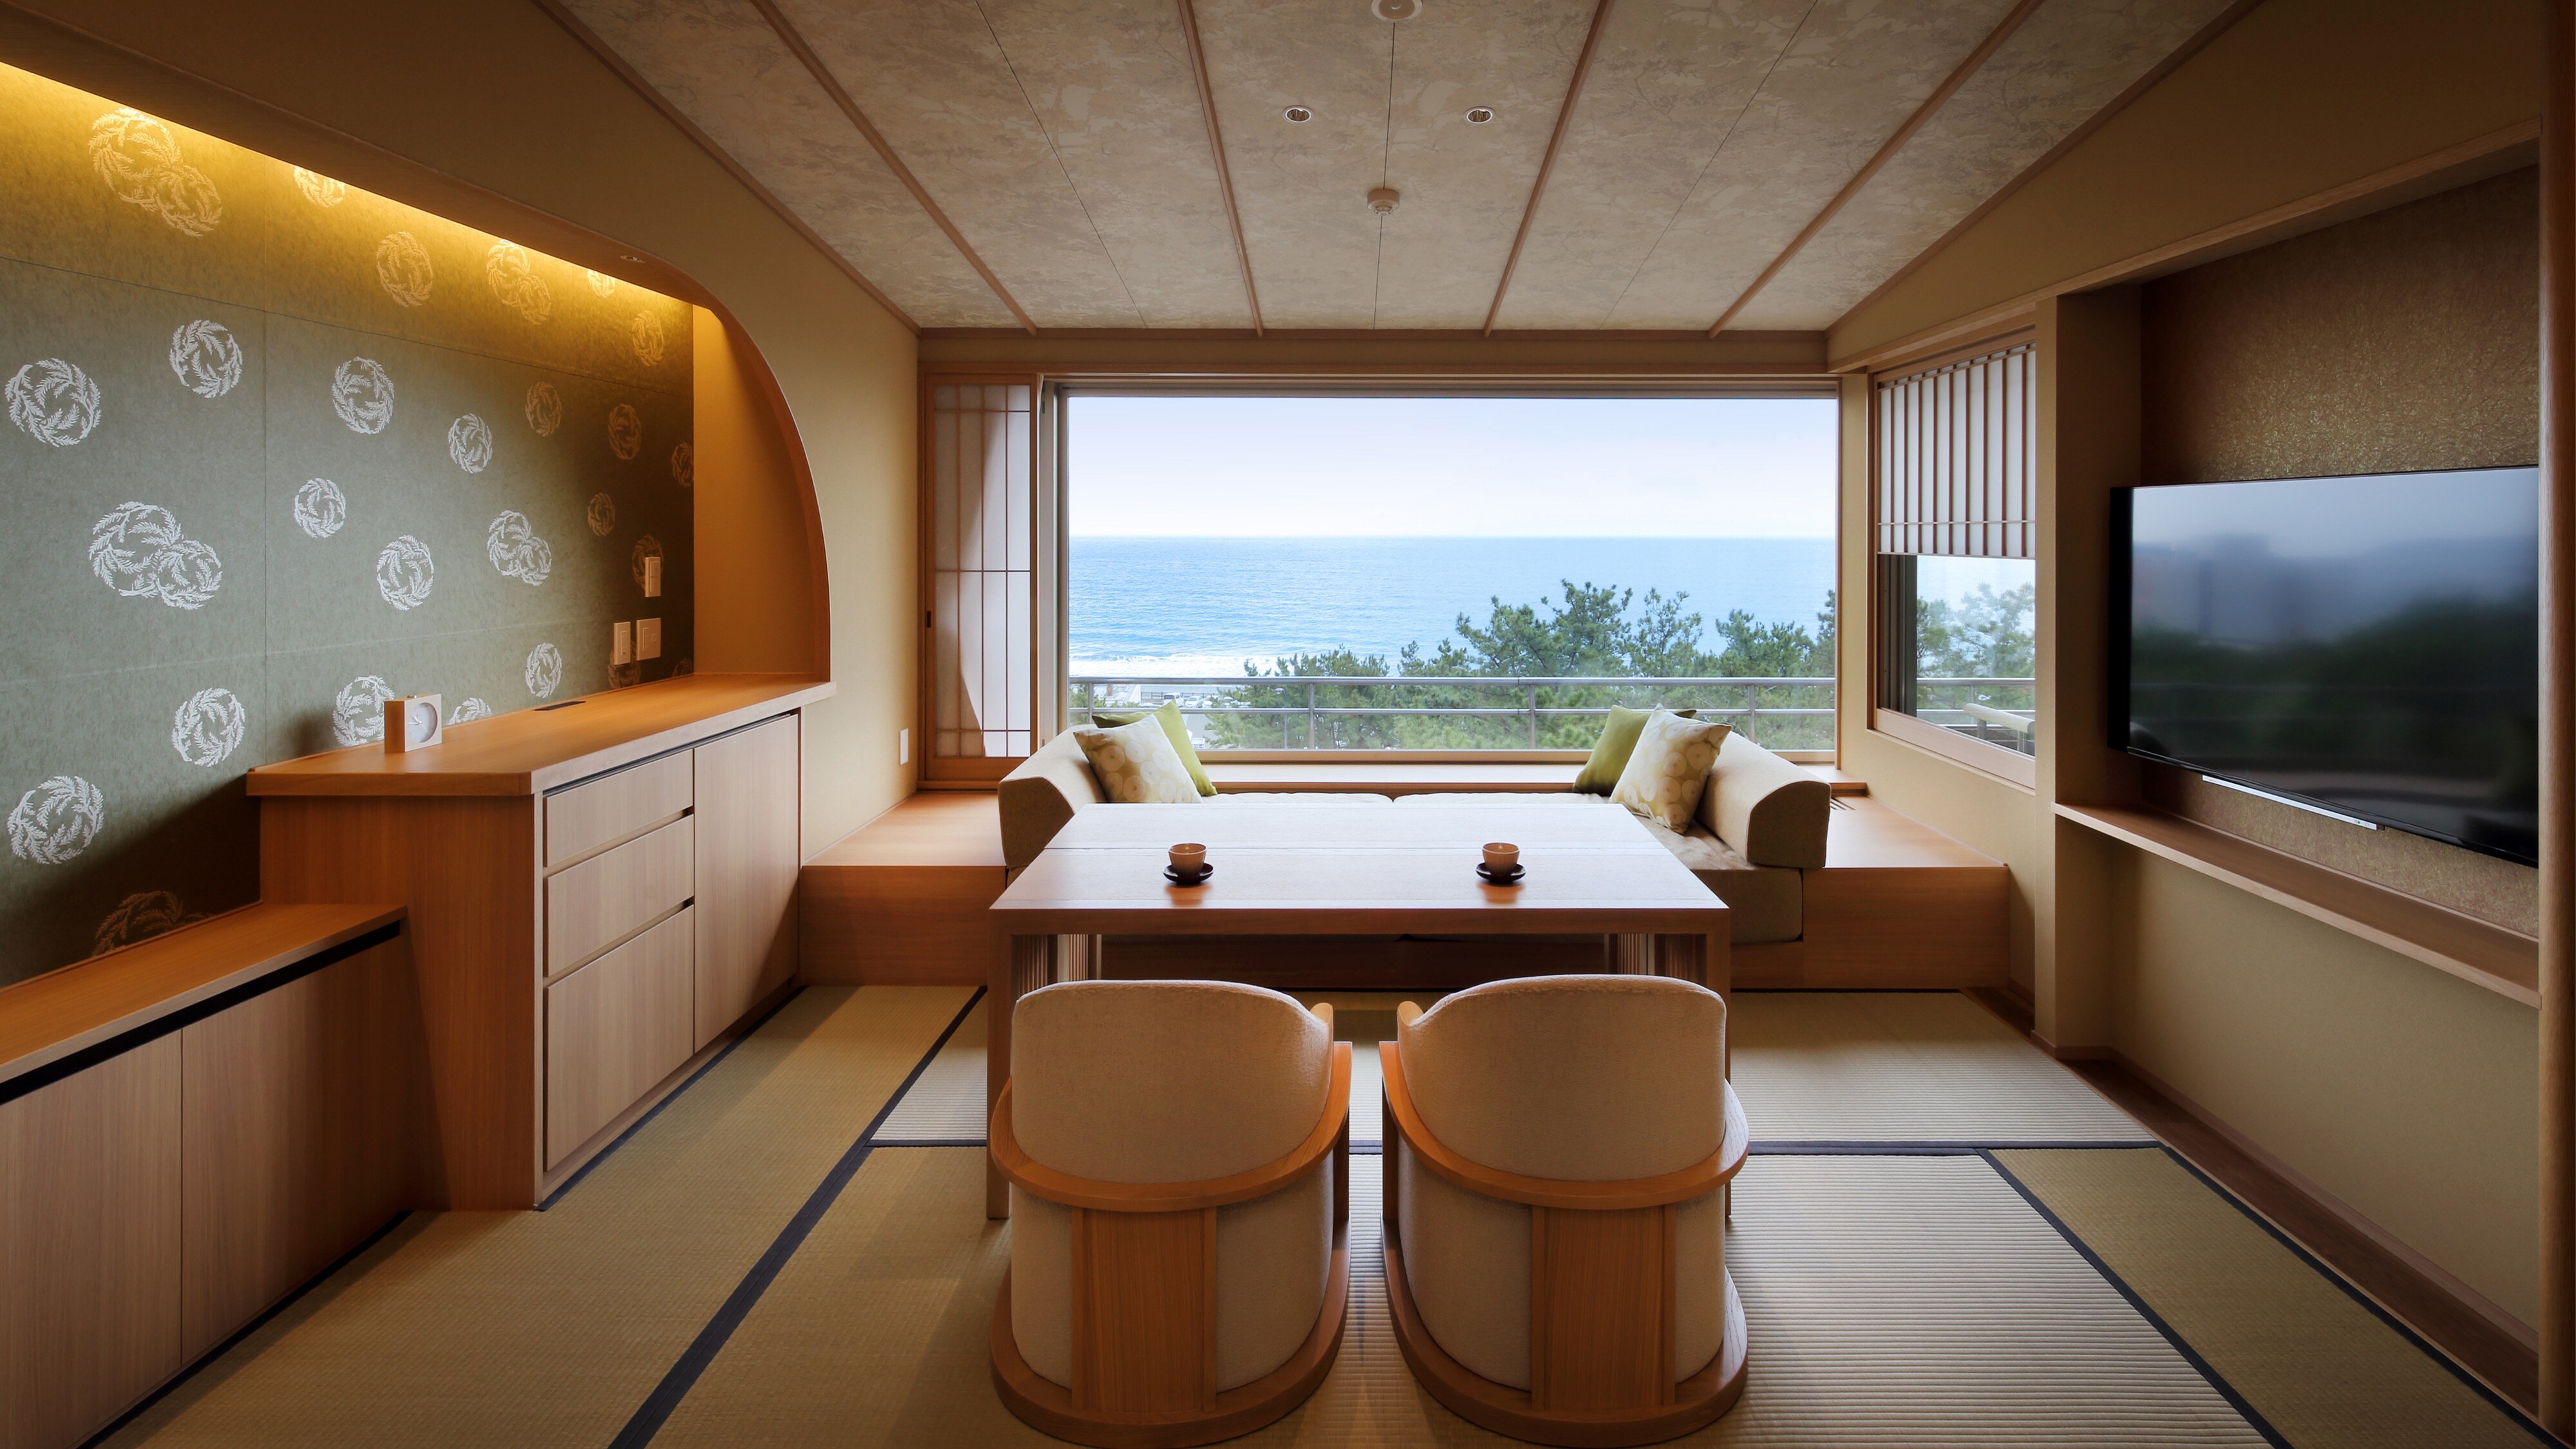 ใหม่: ห้องพักสไตล์ญี่ปุ่น-ตะวันตก พร้อมบ่อน้ำพุร้อนกึ่งเปิดโล่ง (ห้องทานอาหาร + เตียง TW) [6F] (ภาพประเภทห้องอาหารริมหน้าต่าง)